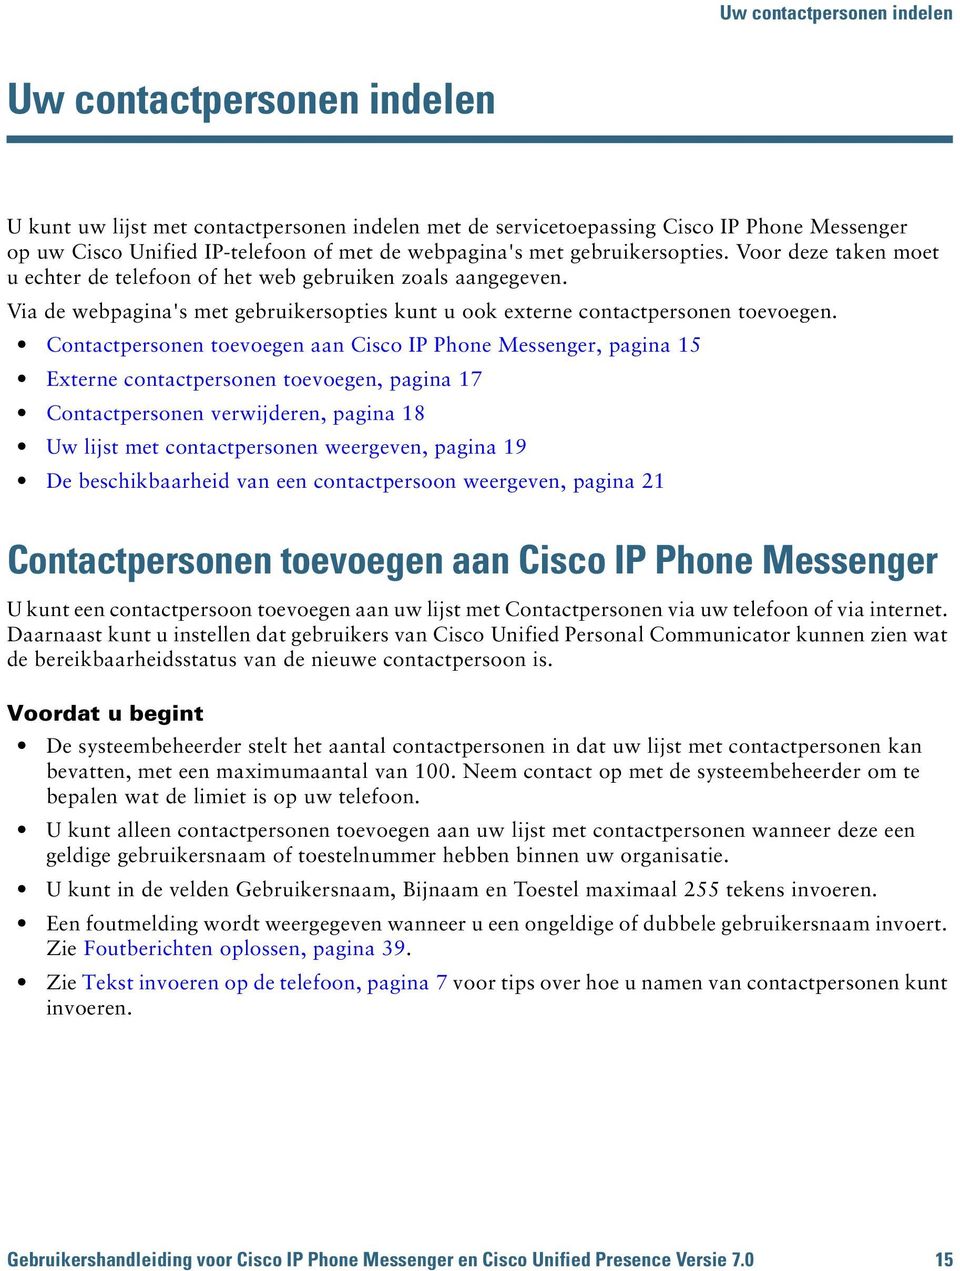 Contactpersonen toevoegen aan Cisco IP Phone Messenger, pagina 15 Externe contactpersonen toevoegen, pagina 17 Contactpersonen verwijderen, pagina 18 Uw lijst met contactpersonen weergeven, pagina 19